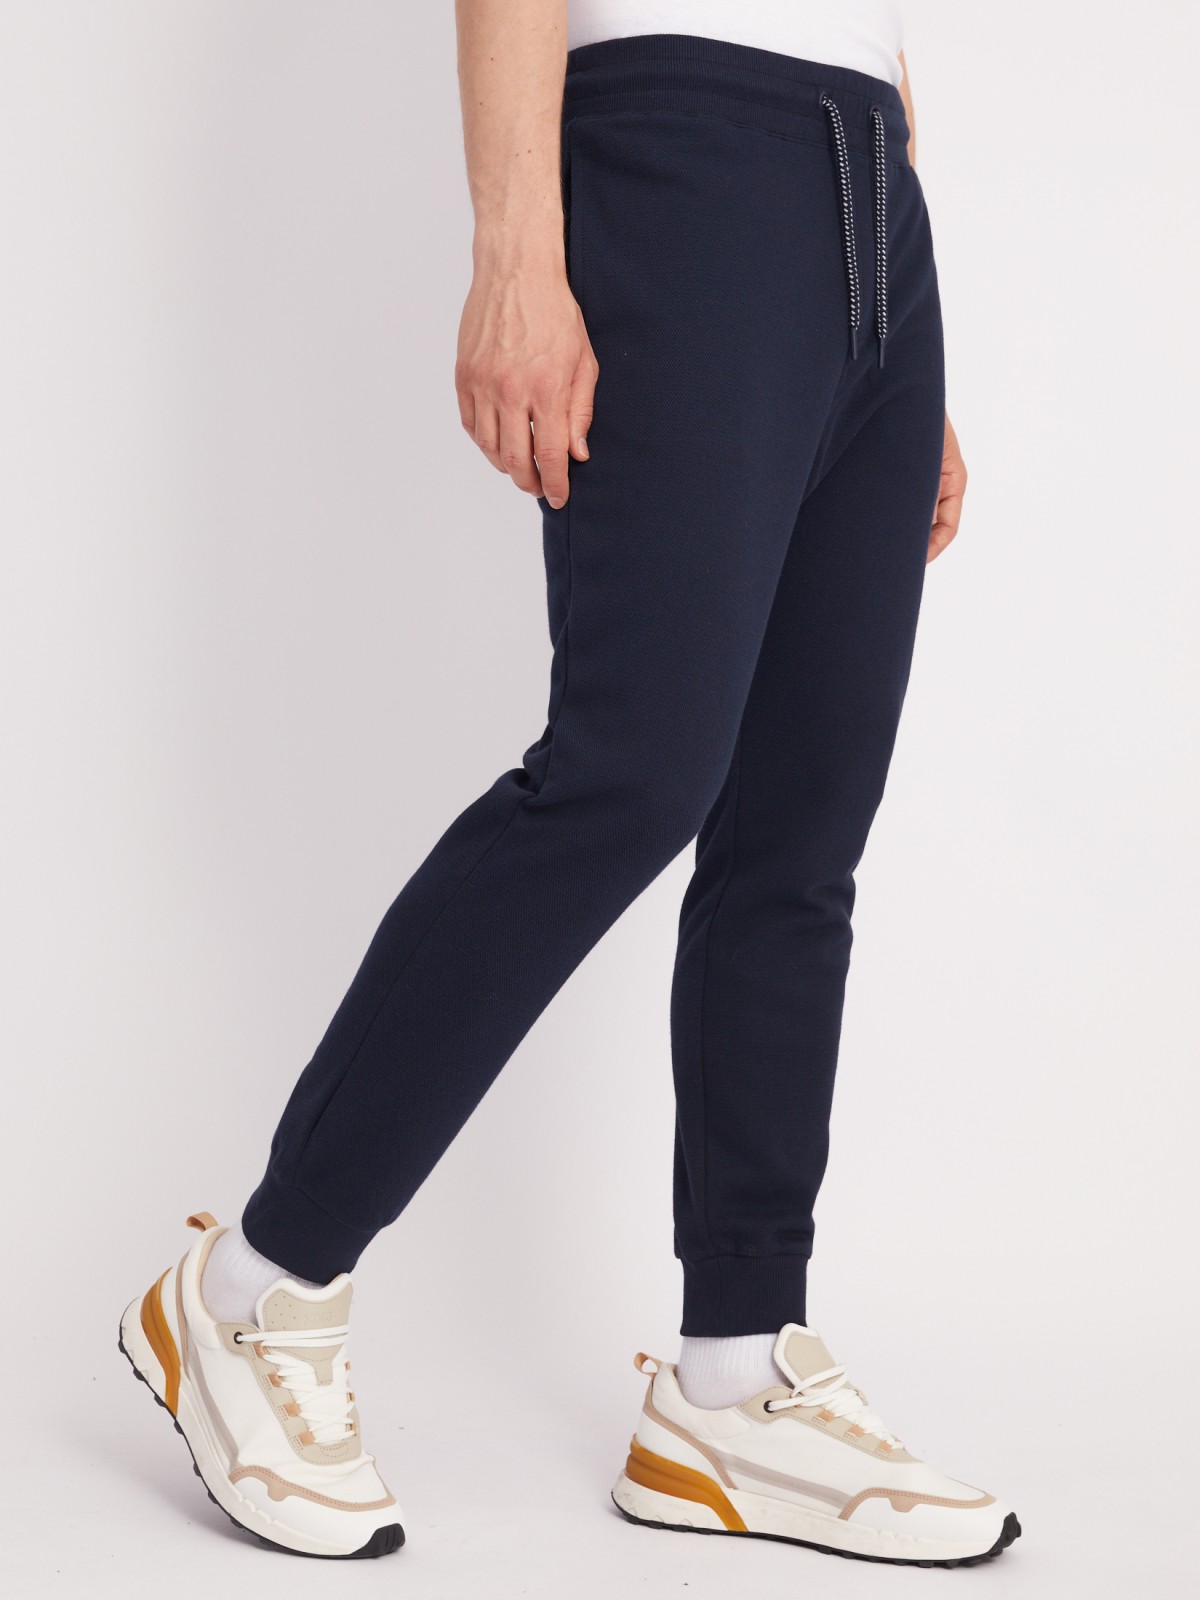 Трикотажные брюки-джоггеры в спортивном стиле zolla 21331762F012, цвет синий, размер XXL - фото 3